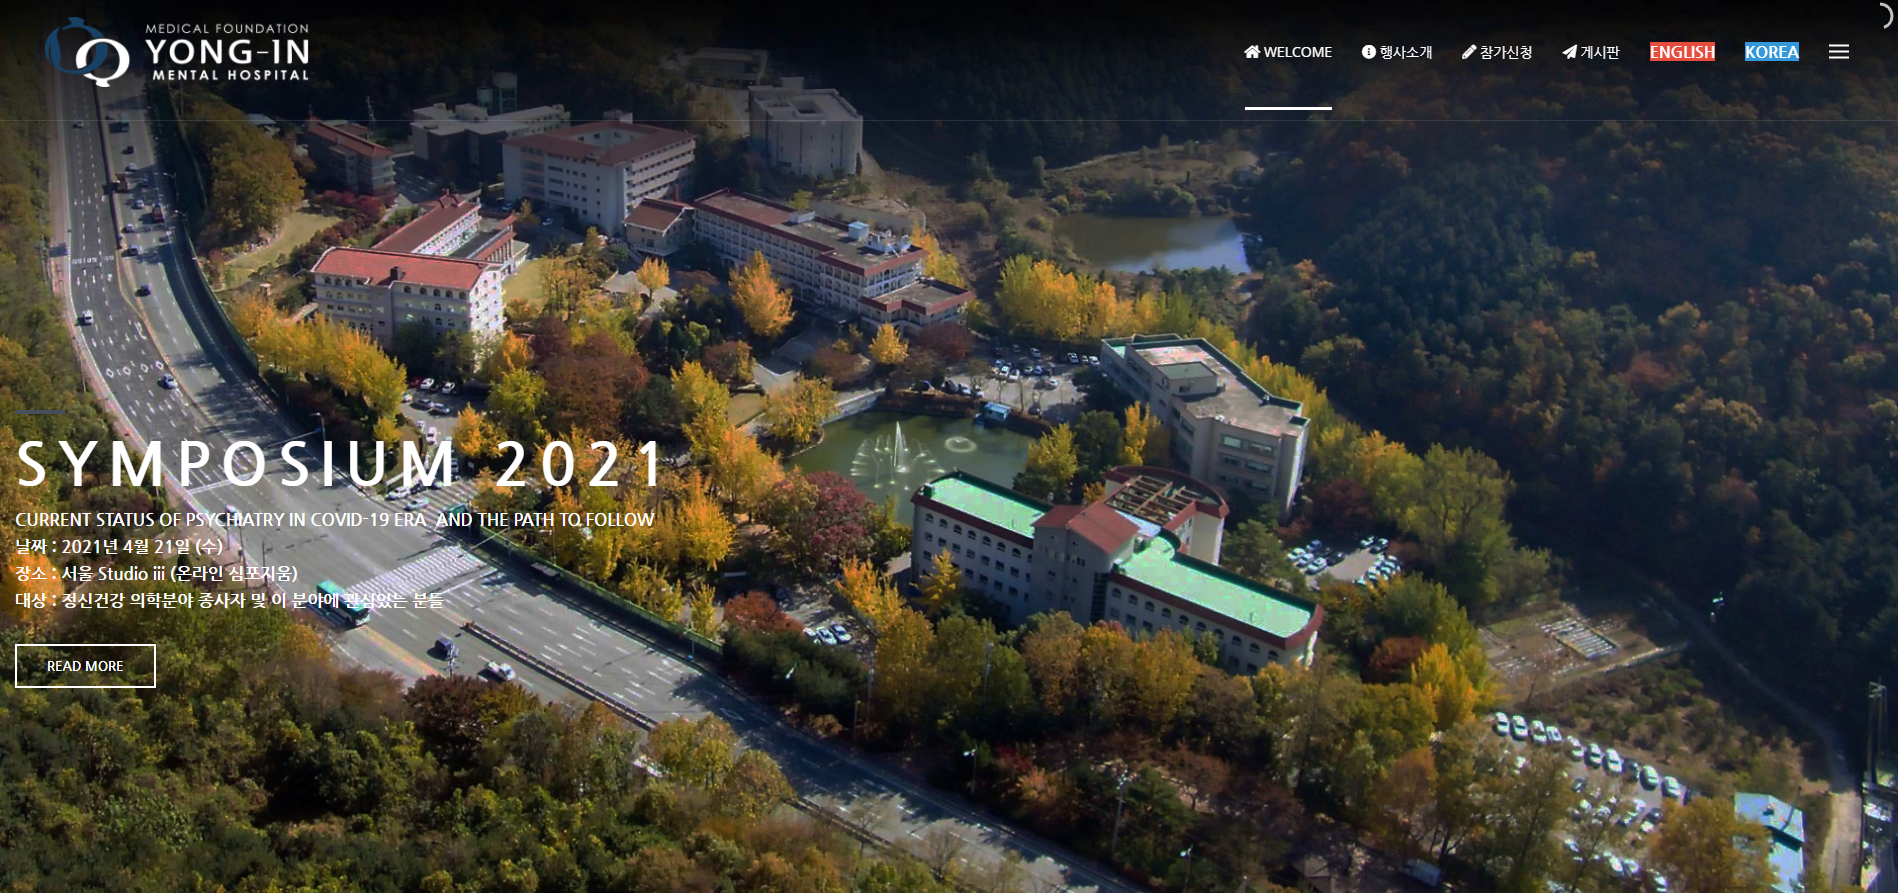 2021-용인병원-심포지움-웨비나-기획-홈페이지-메인